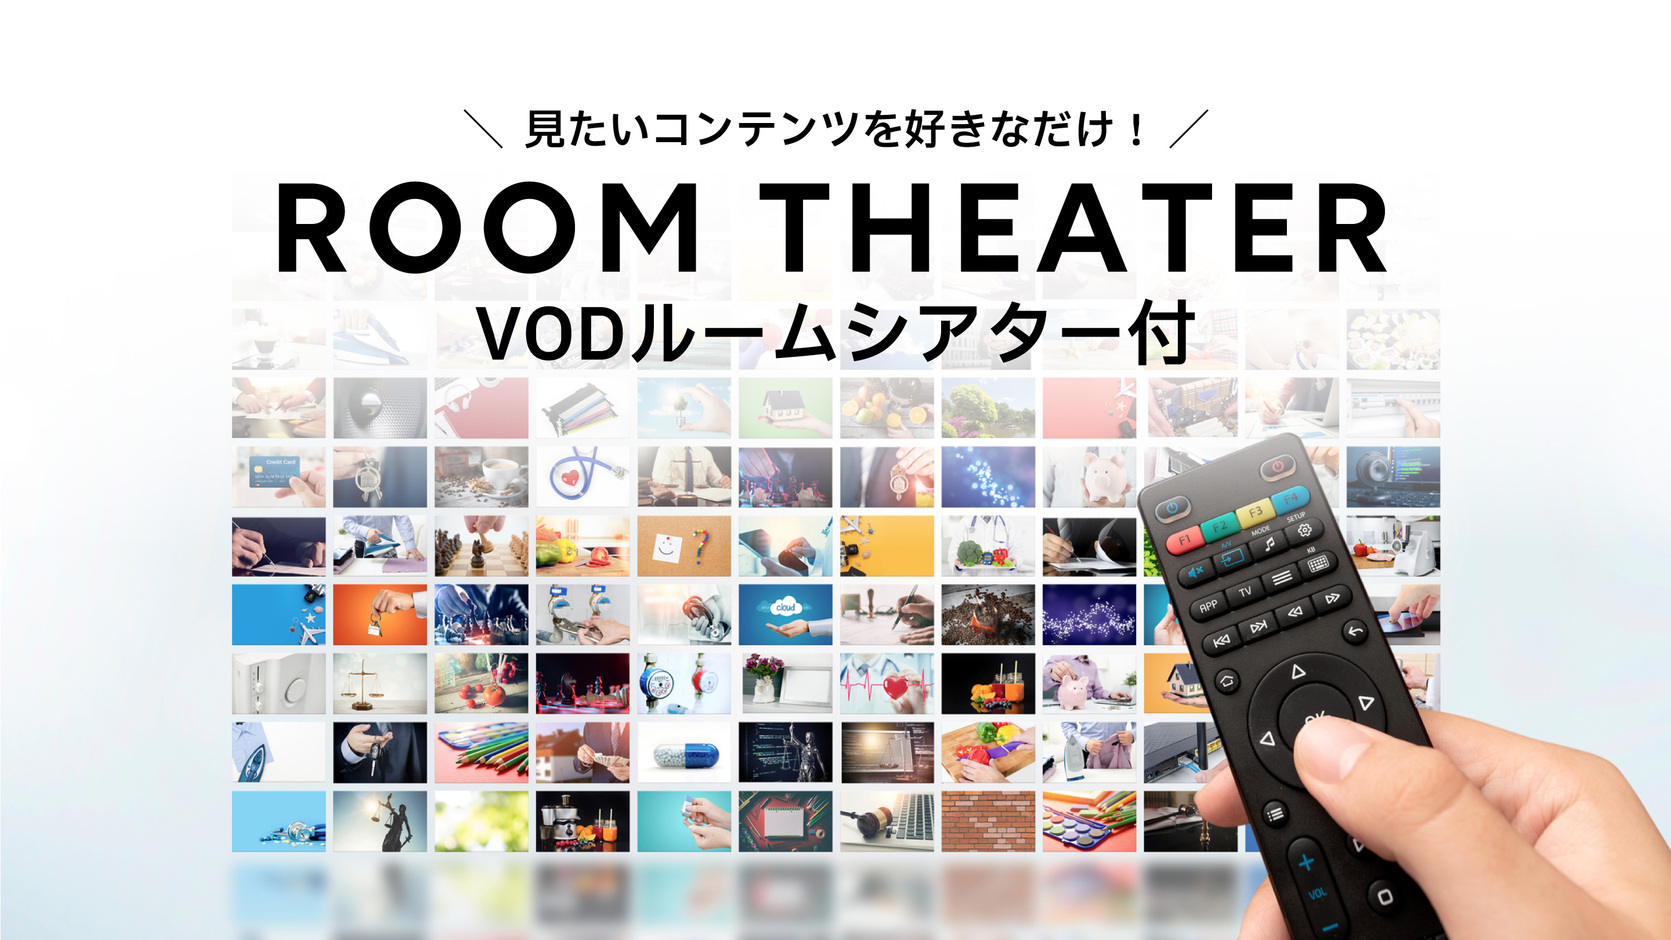 VODルームシアター(ルームシアターカードは券売機でのご購入も可能です。1枚1000円)